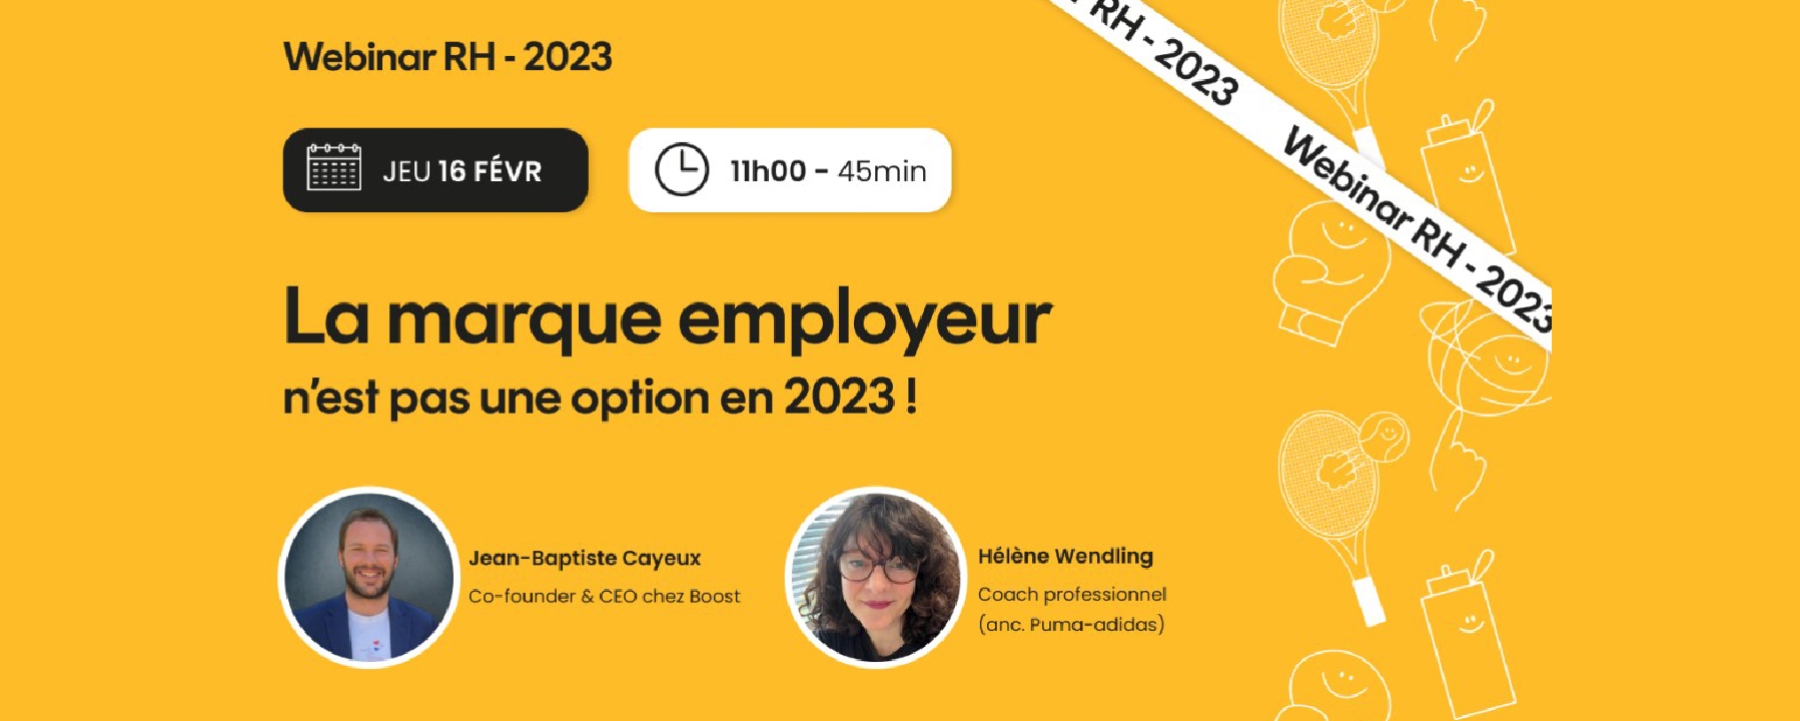 Marque employeur 2023 - Webinar 100% RH